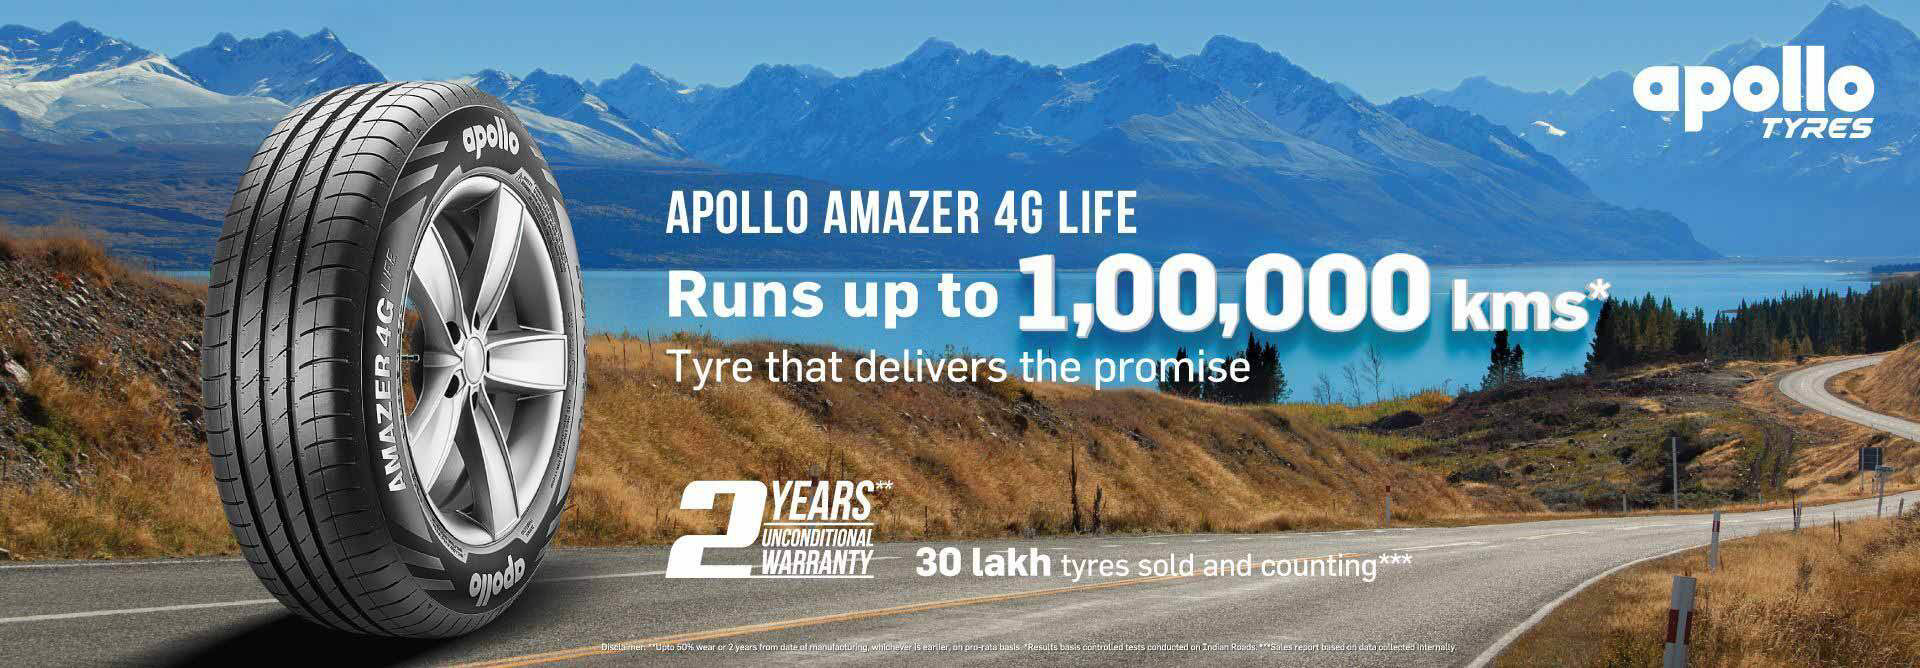 Apollo Amazaer 4g life